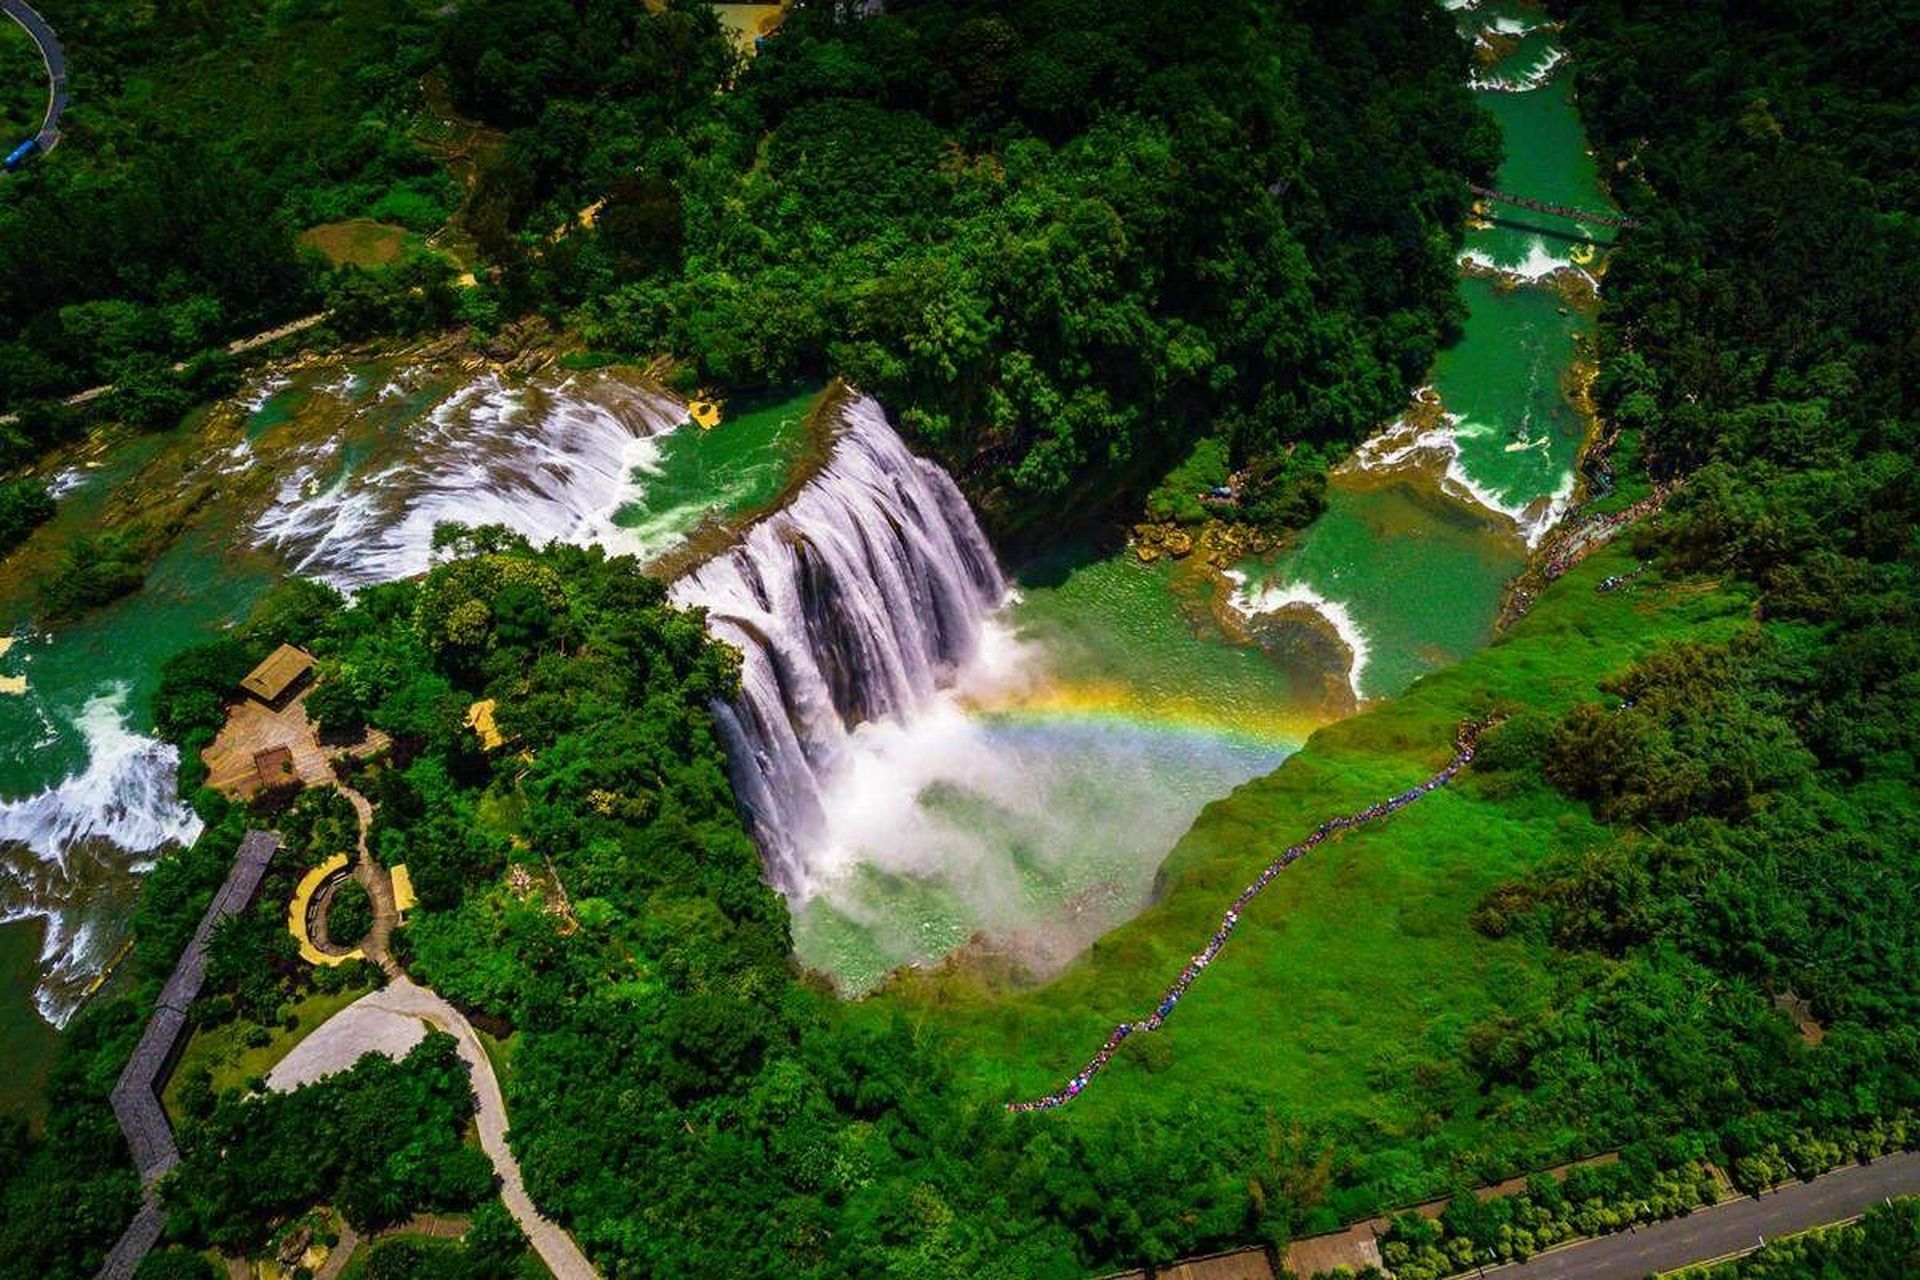 贵州黄果树瀑布,电视剧《西游记》的取景地 黄果树瀑布, 位于贵州安顺